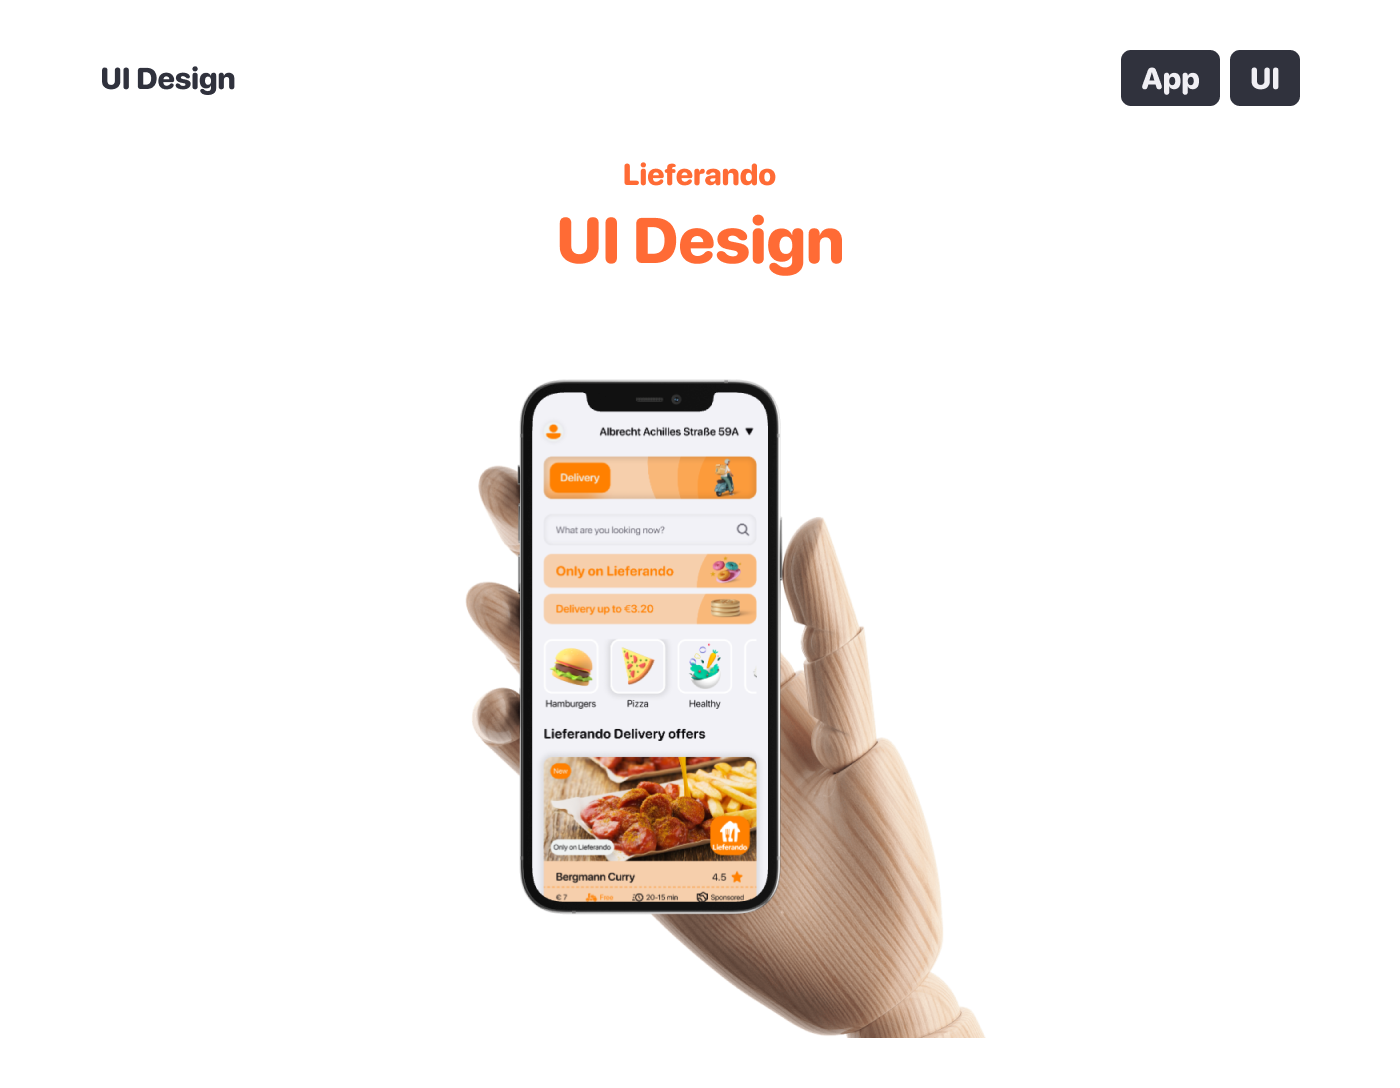 ui design app design Figma user interface Mobile app